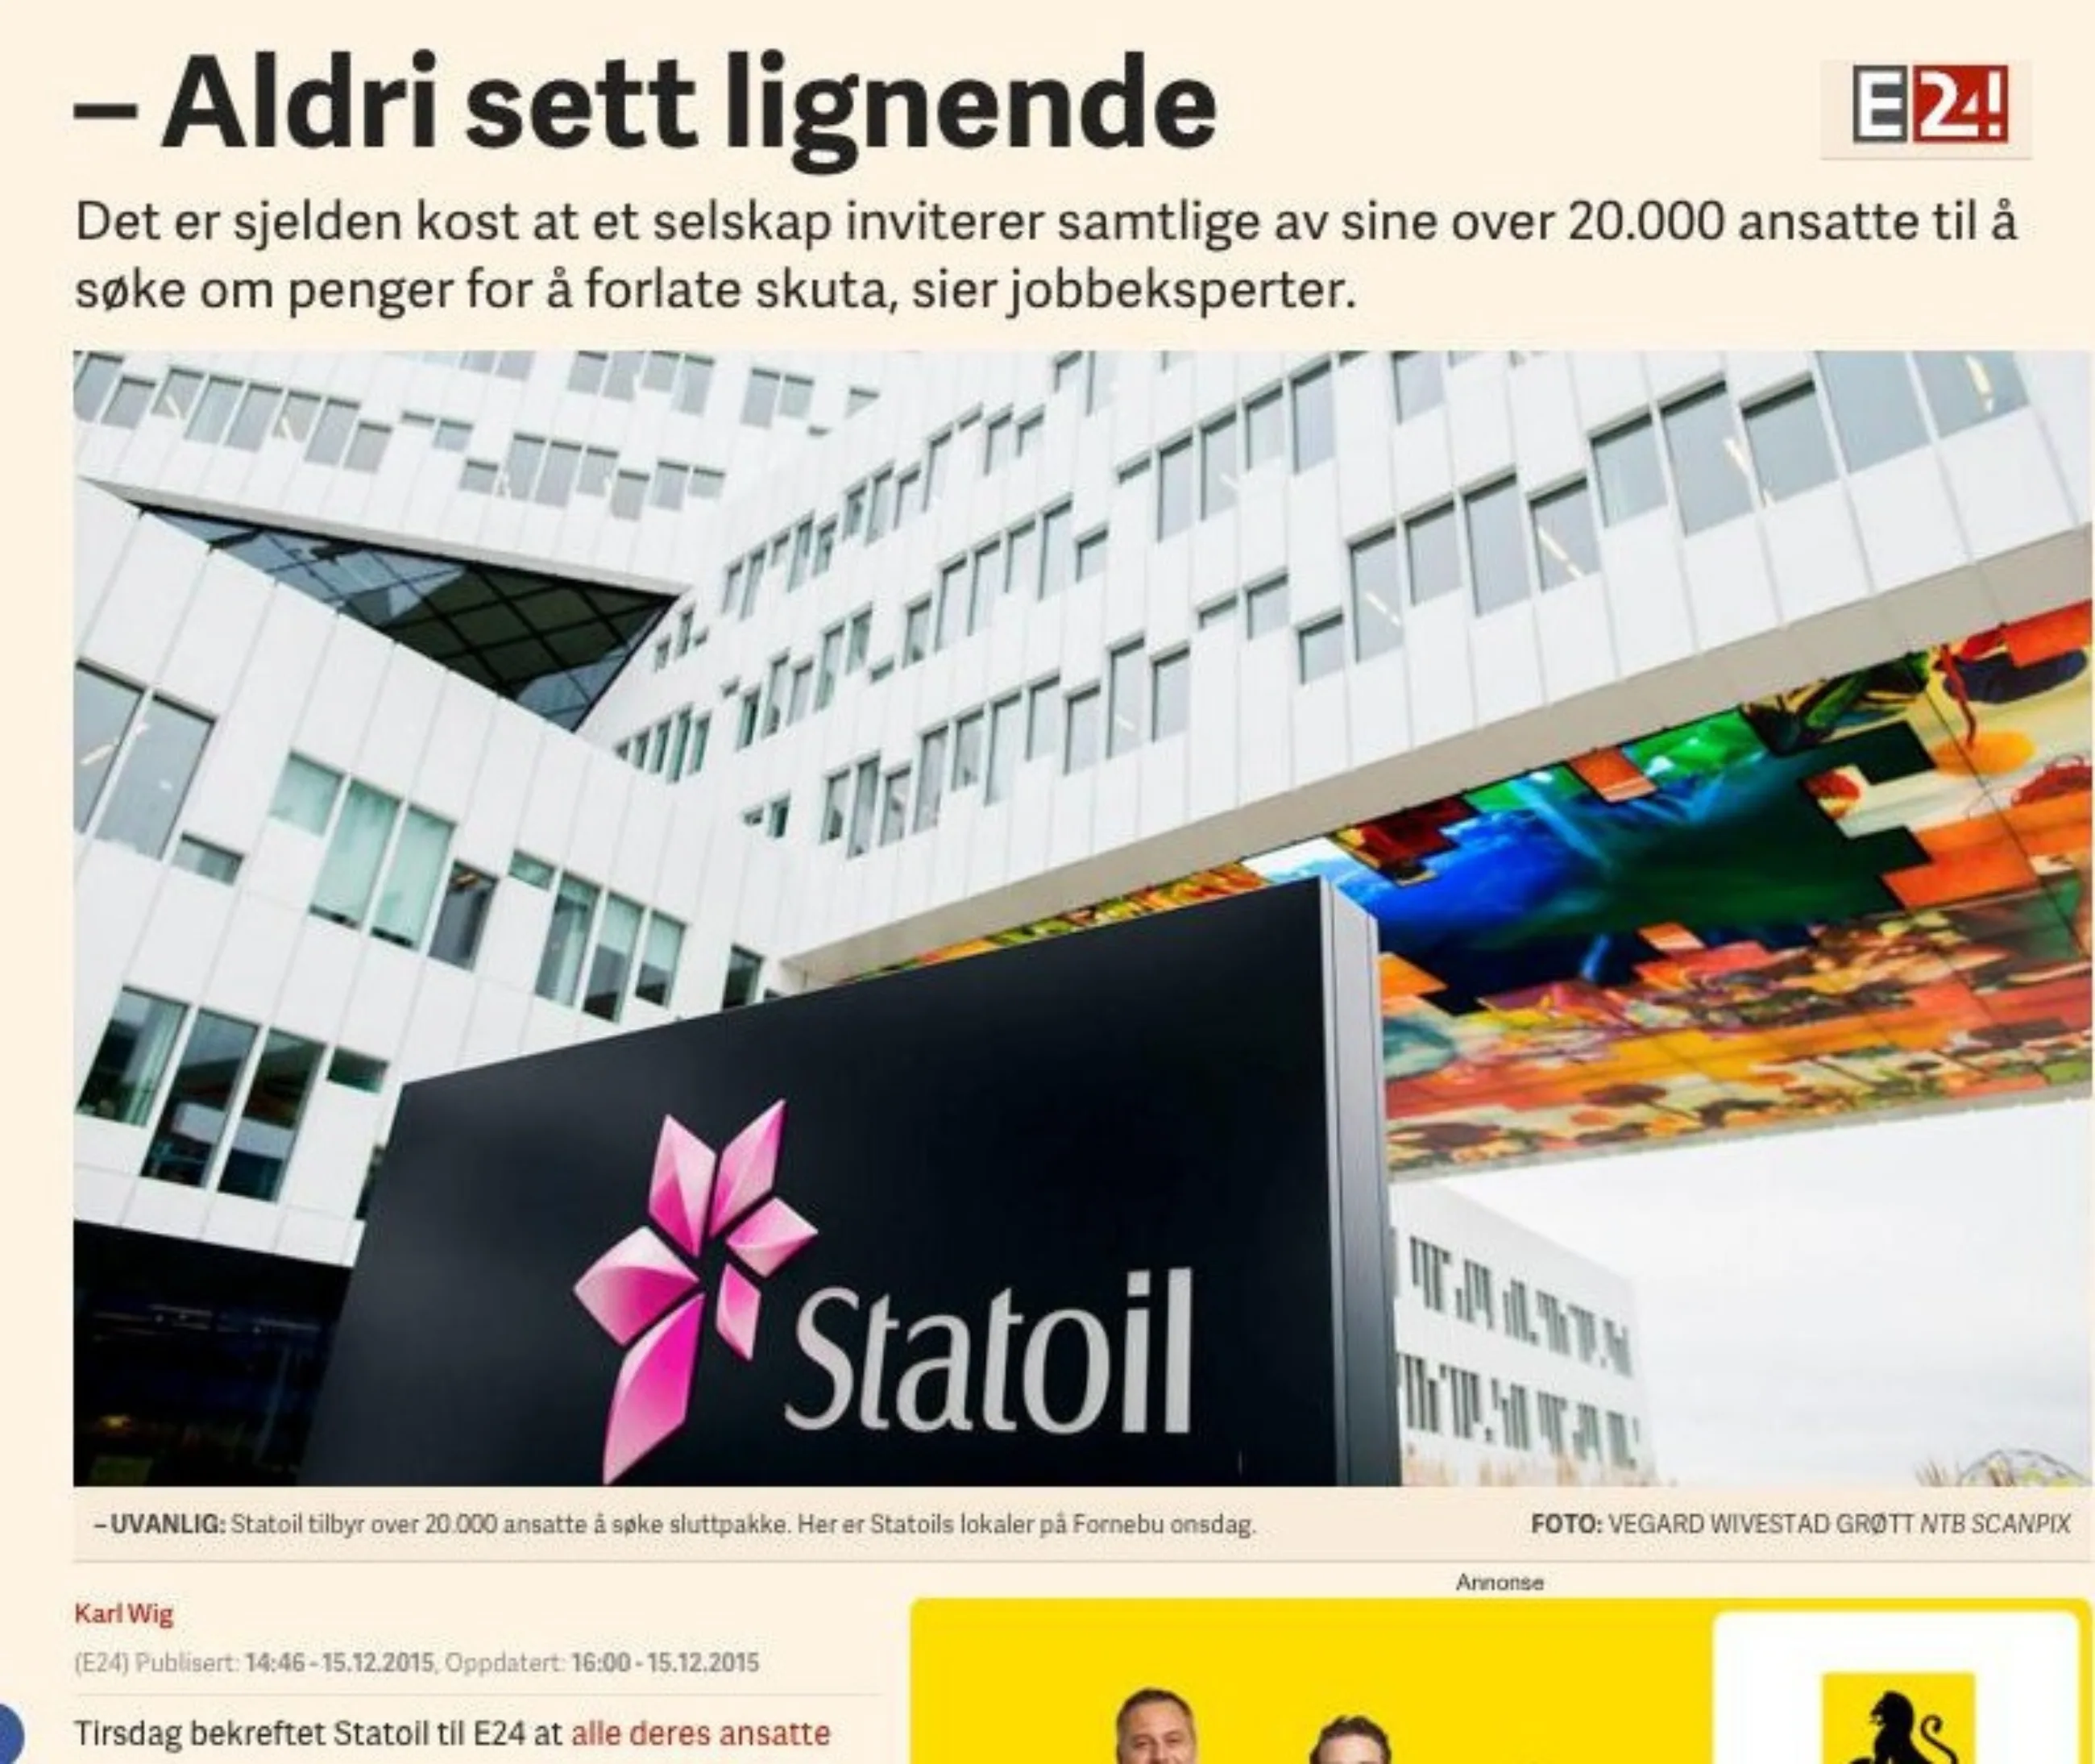 2015 12 14 E24 Jobbeksperter om Statoils kutt grep Aldri sett lignende cropped